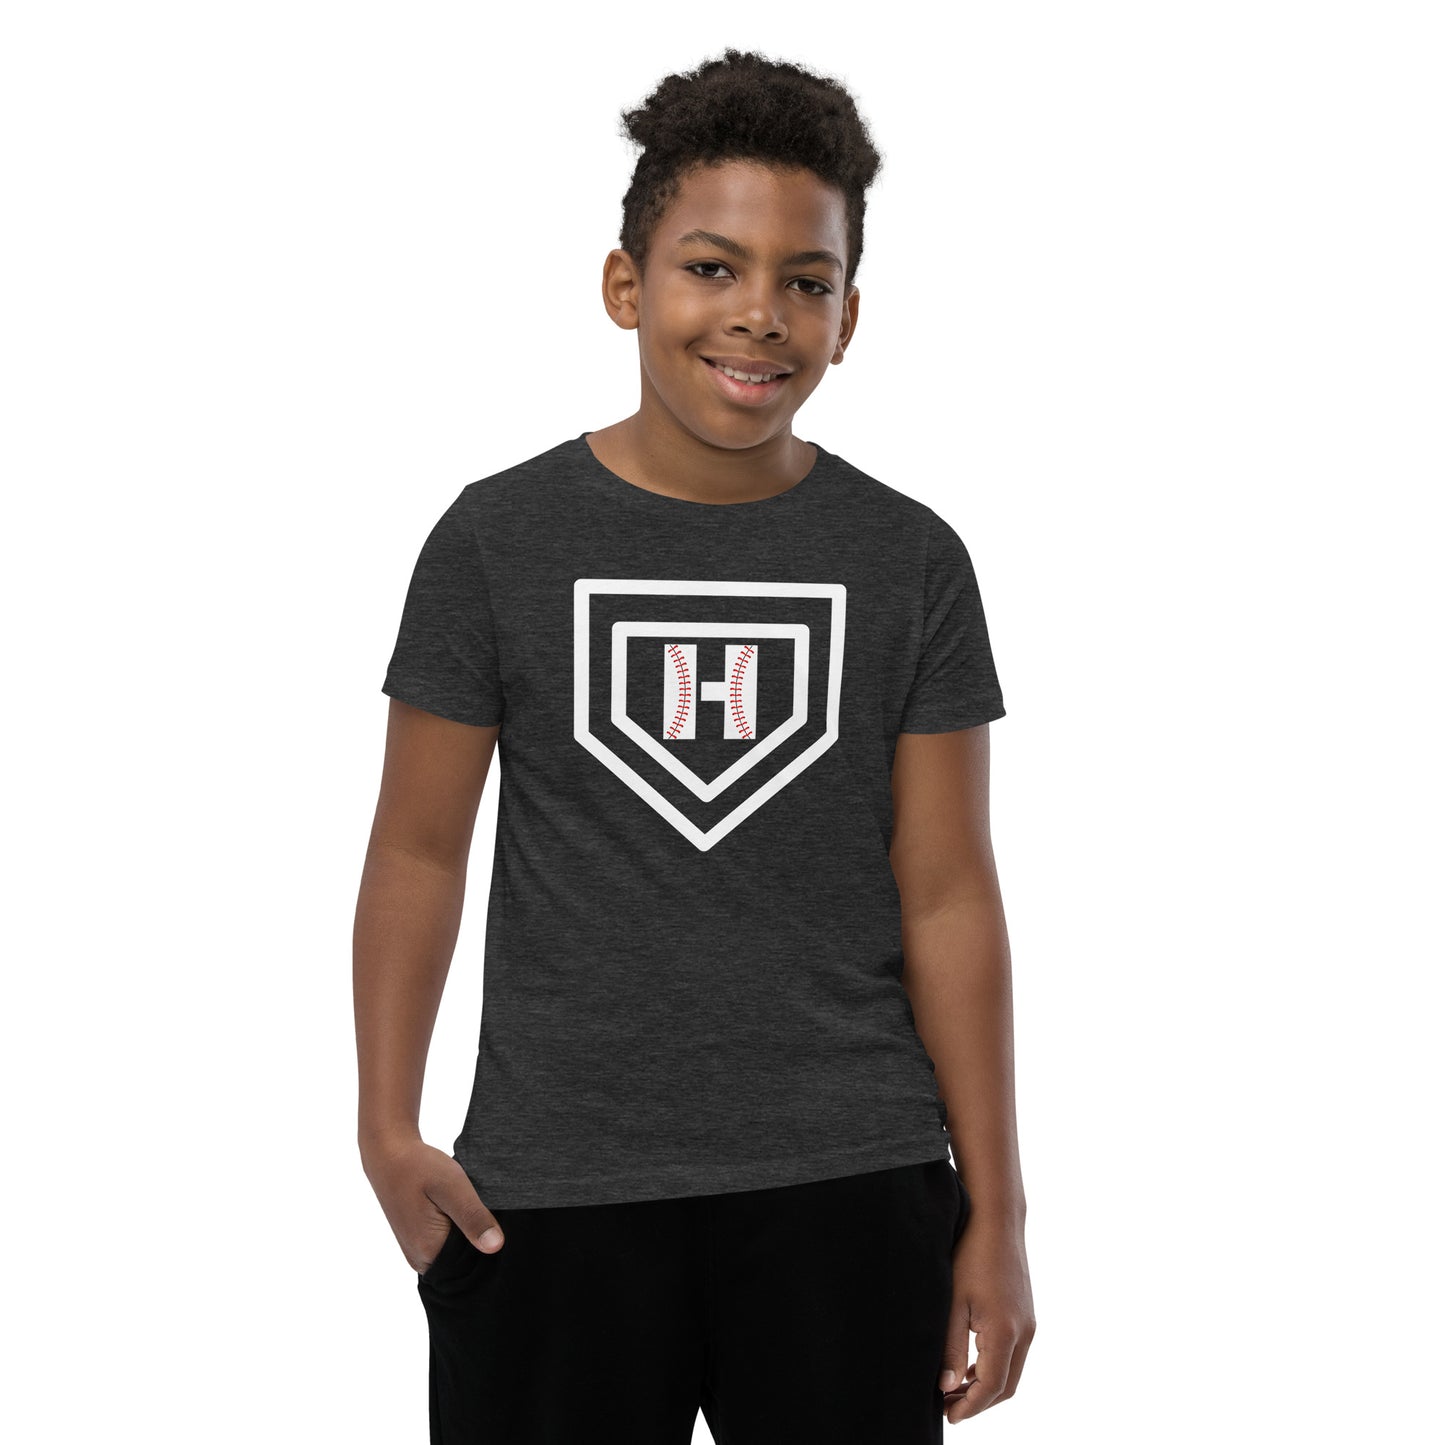 White H Seam Logo Youth Short Sleeve T-Shirt